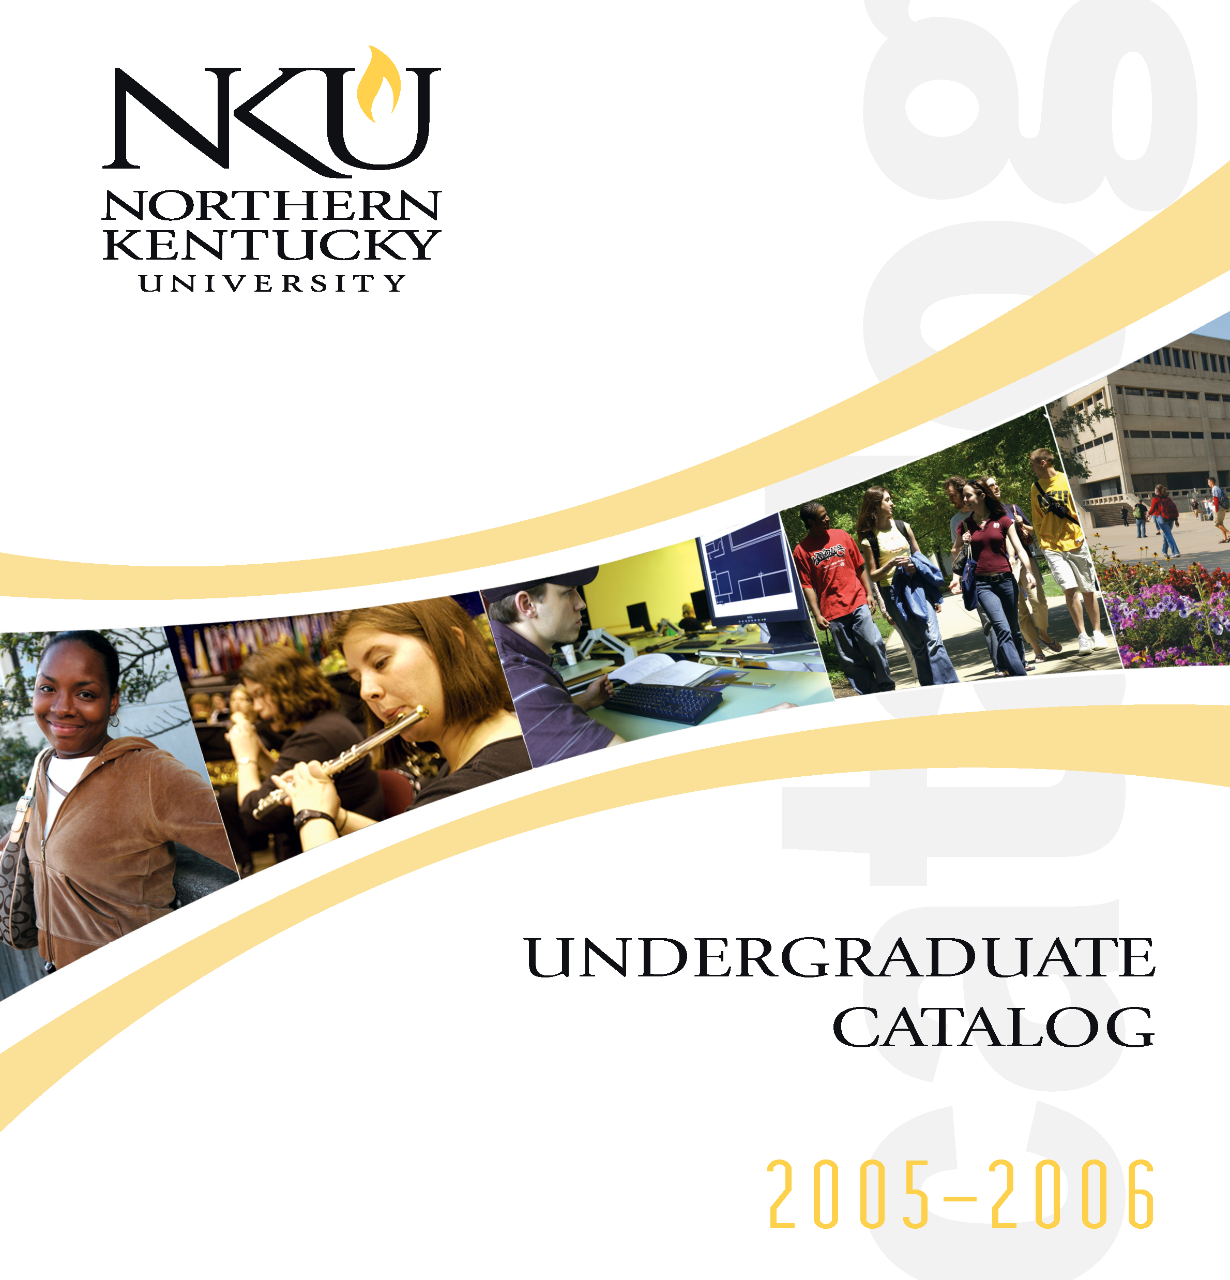 2005-2006 undergraduate catalog